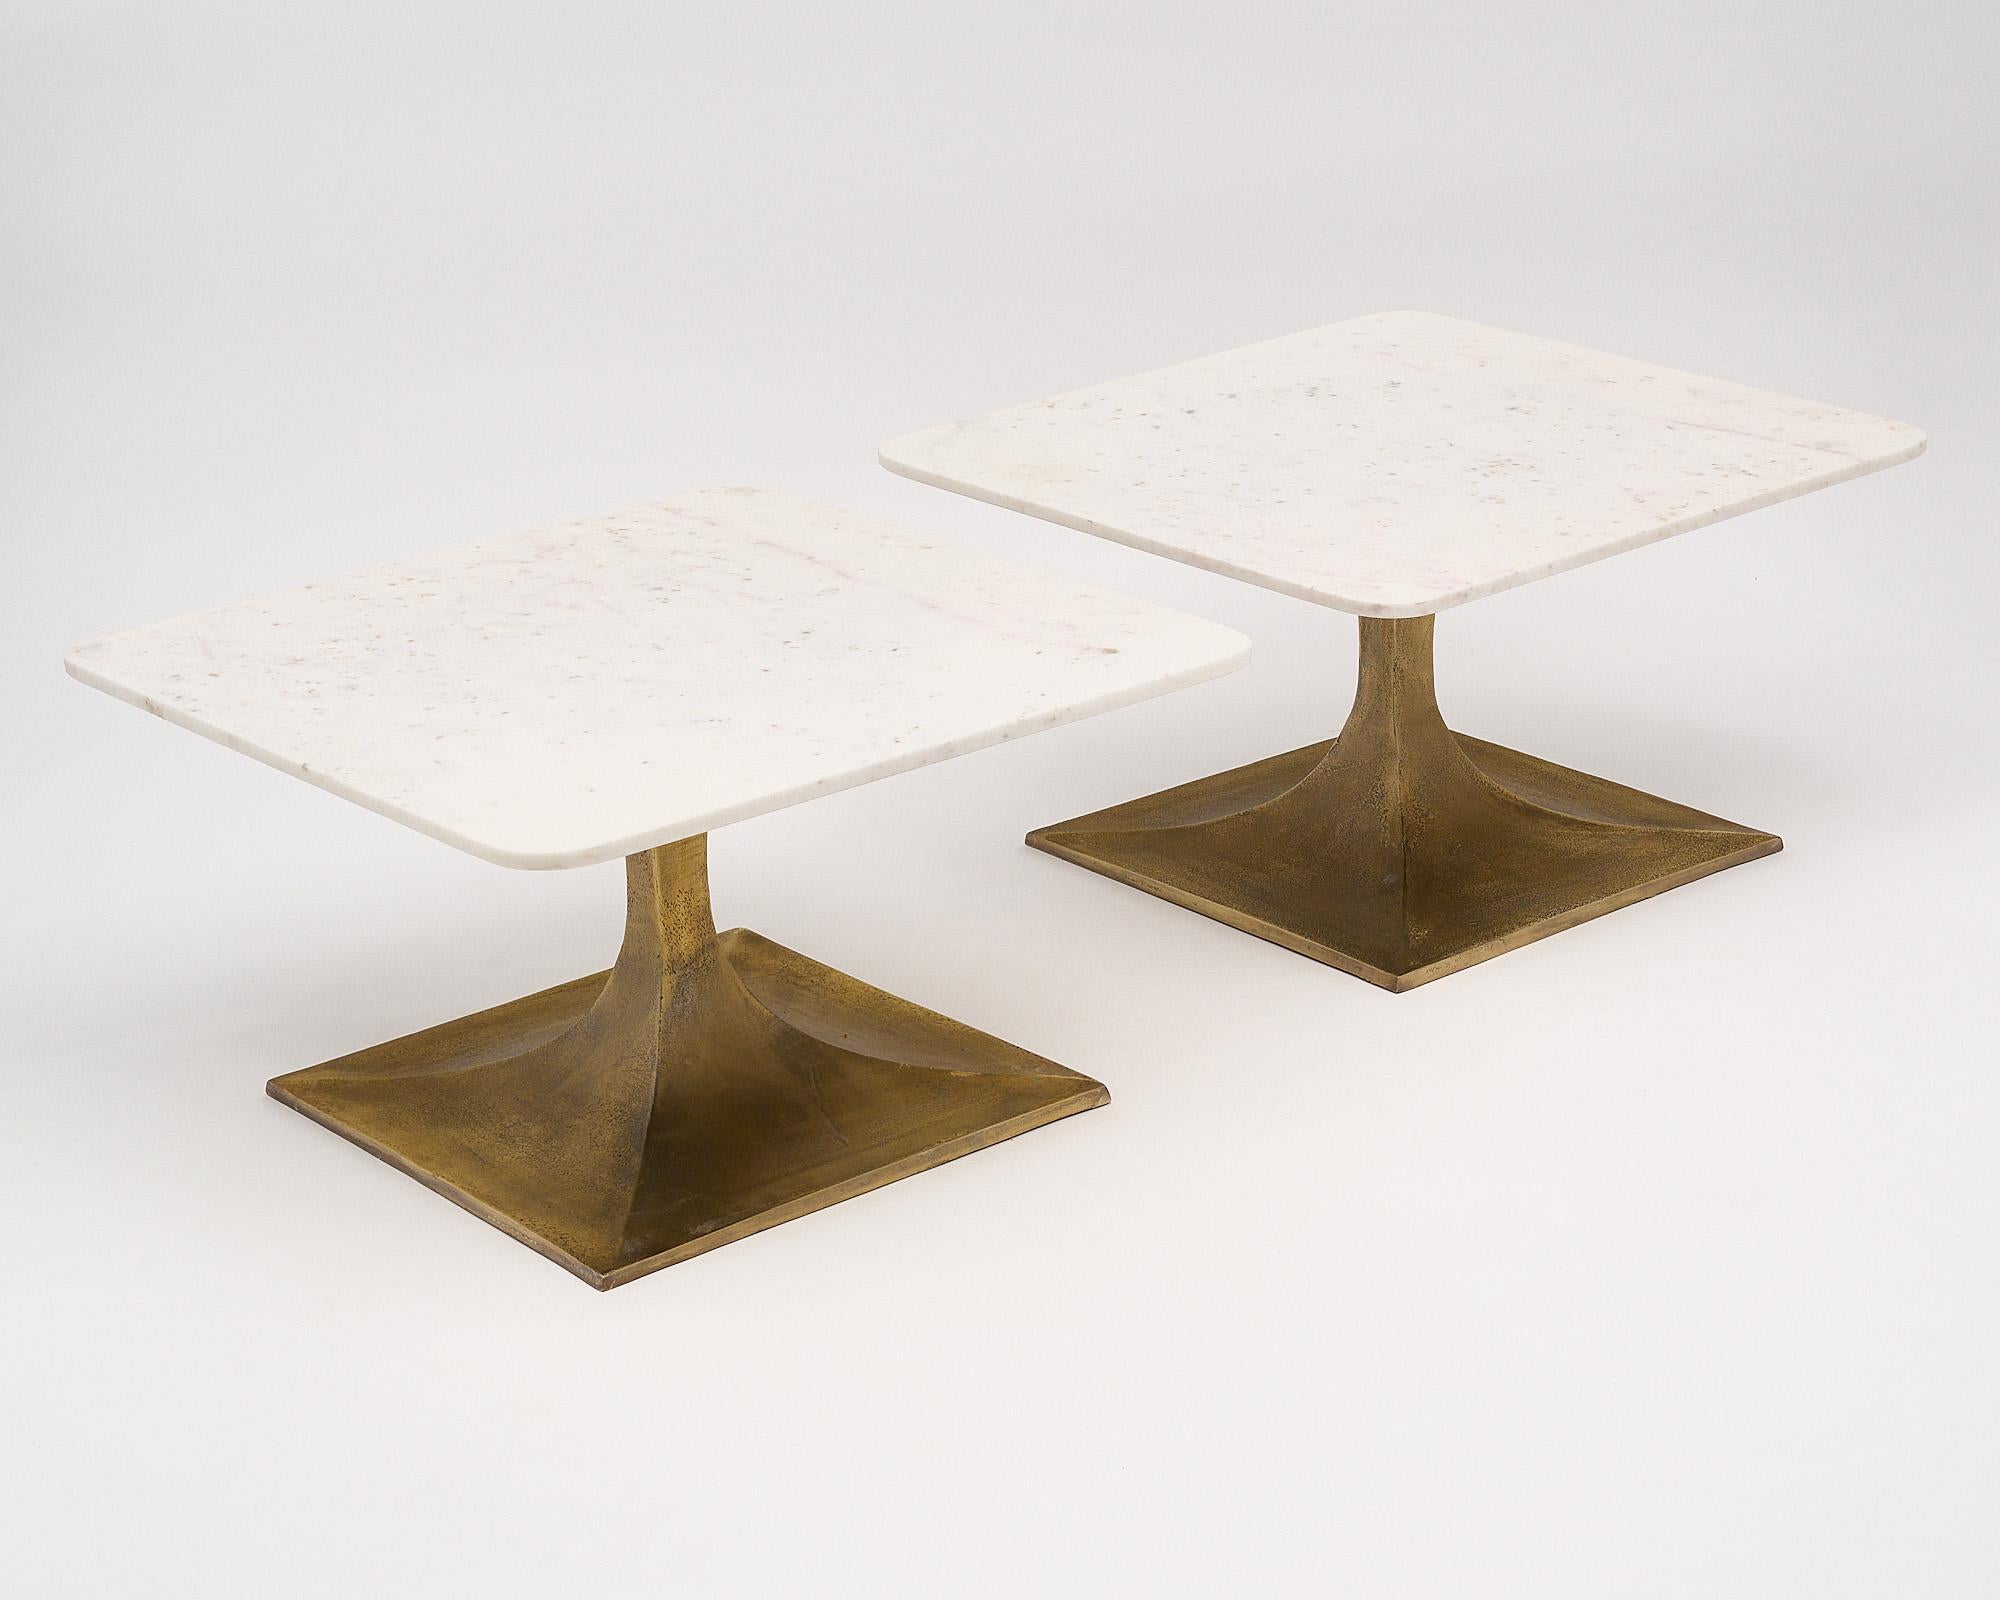 Ein Paar Beistelltische aus Frankreich mit konischen Sockeln aus Bronze und Platten aus Carrara-Marmor. Diese Tische stammen ursprünglich aus dem Ausstellungsraum von Cartier in Monte Carlo. Dieses quadratische Paar hat geschwungene Ecken, die dem